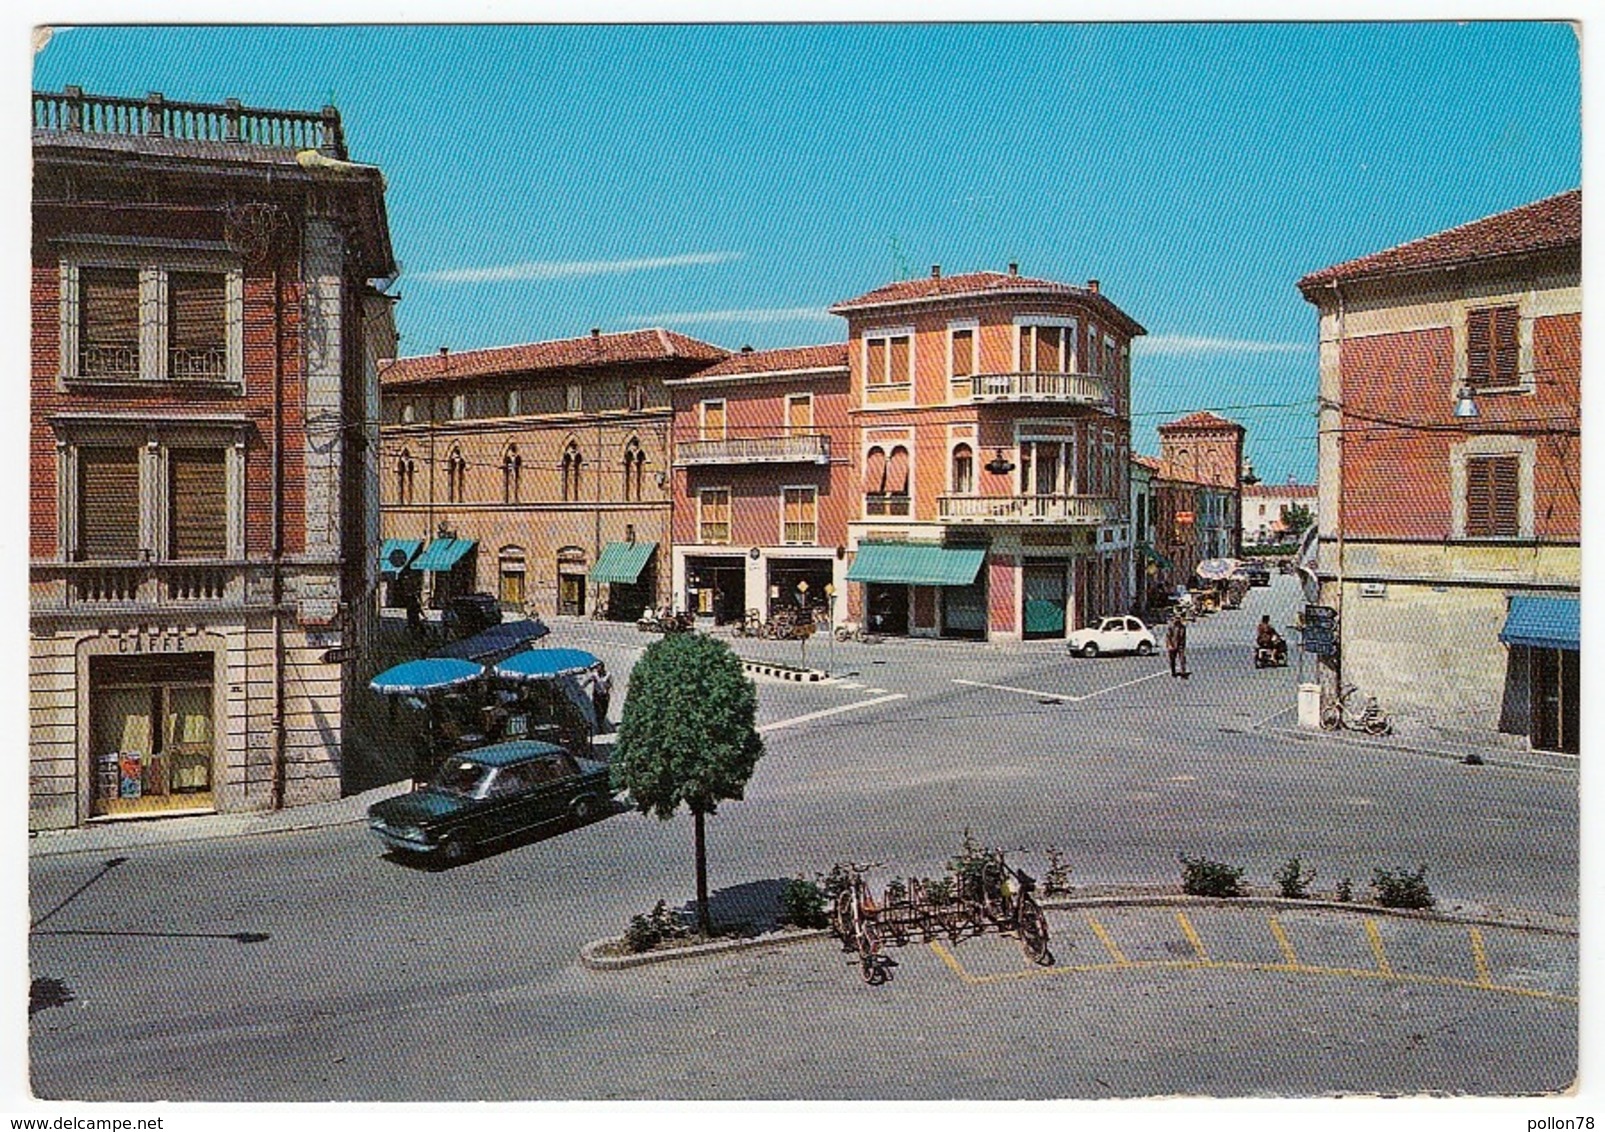 MIGLIARINO - LARGO ZERBINI - FERRARA - 1983 - Ferrara